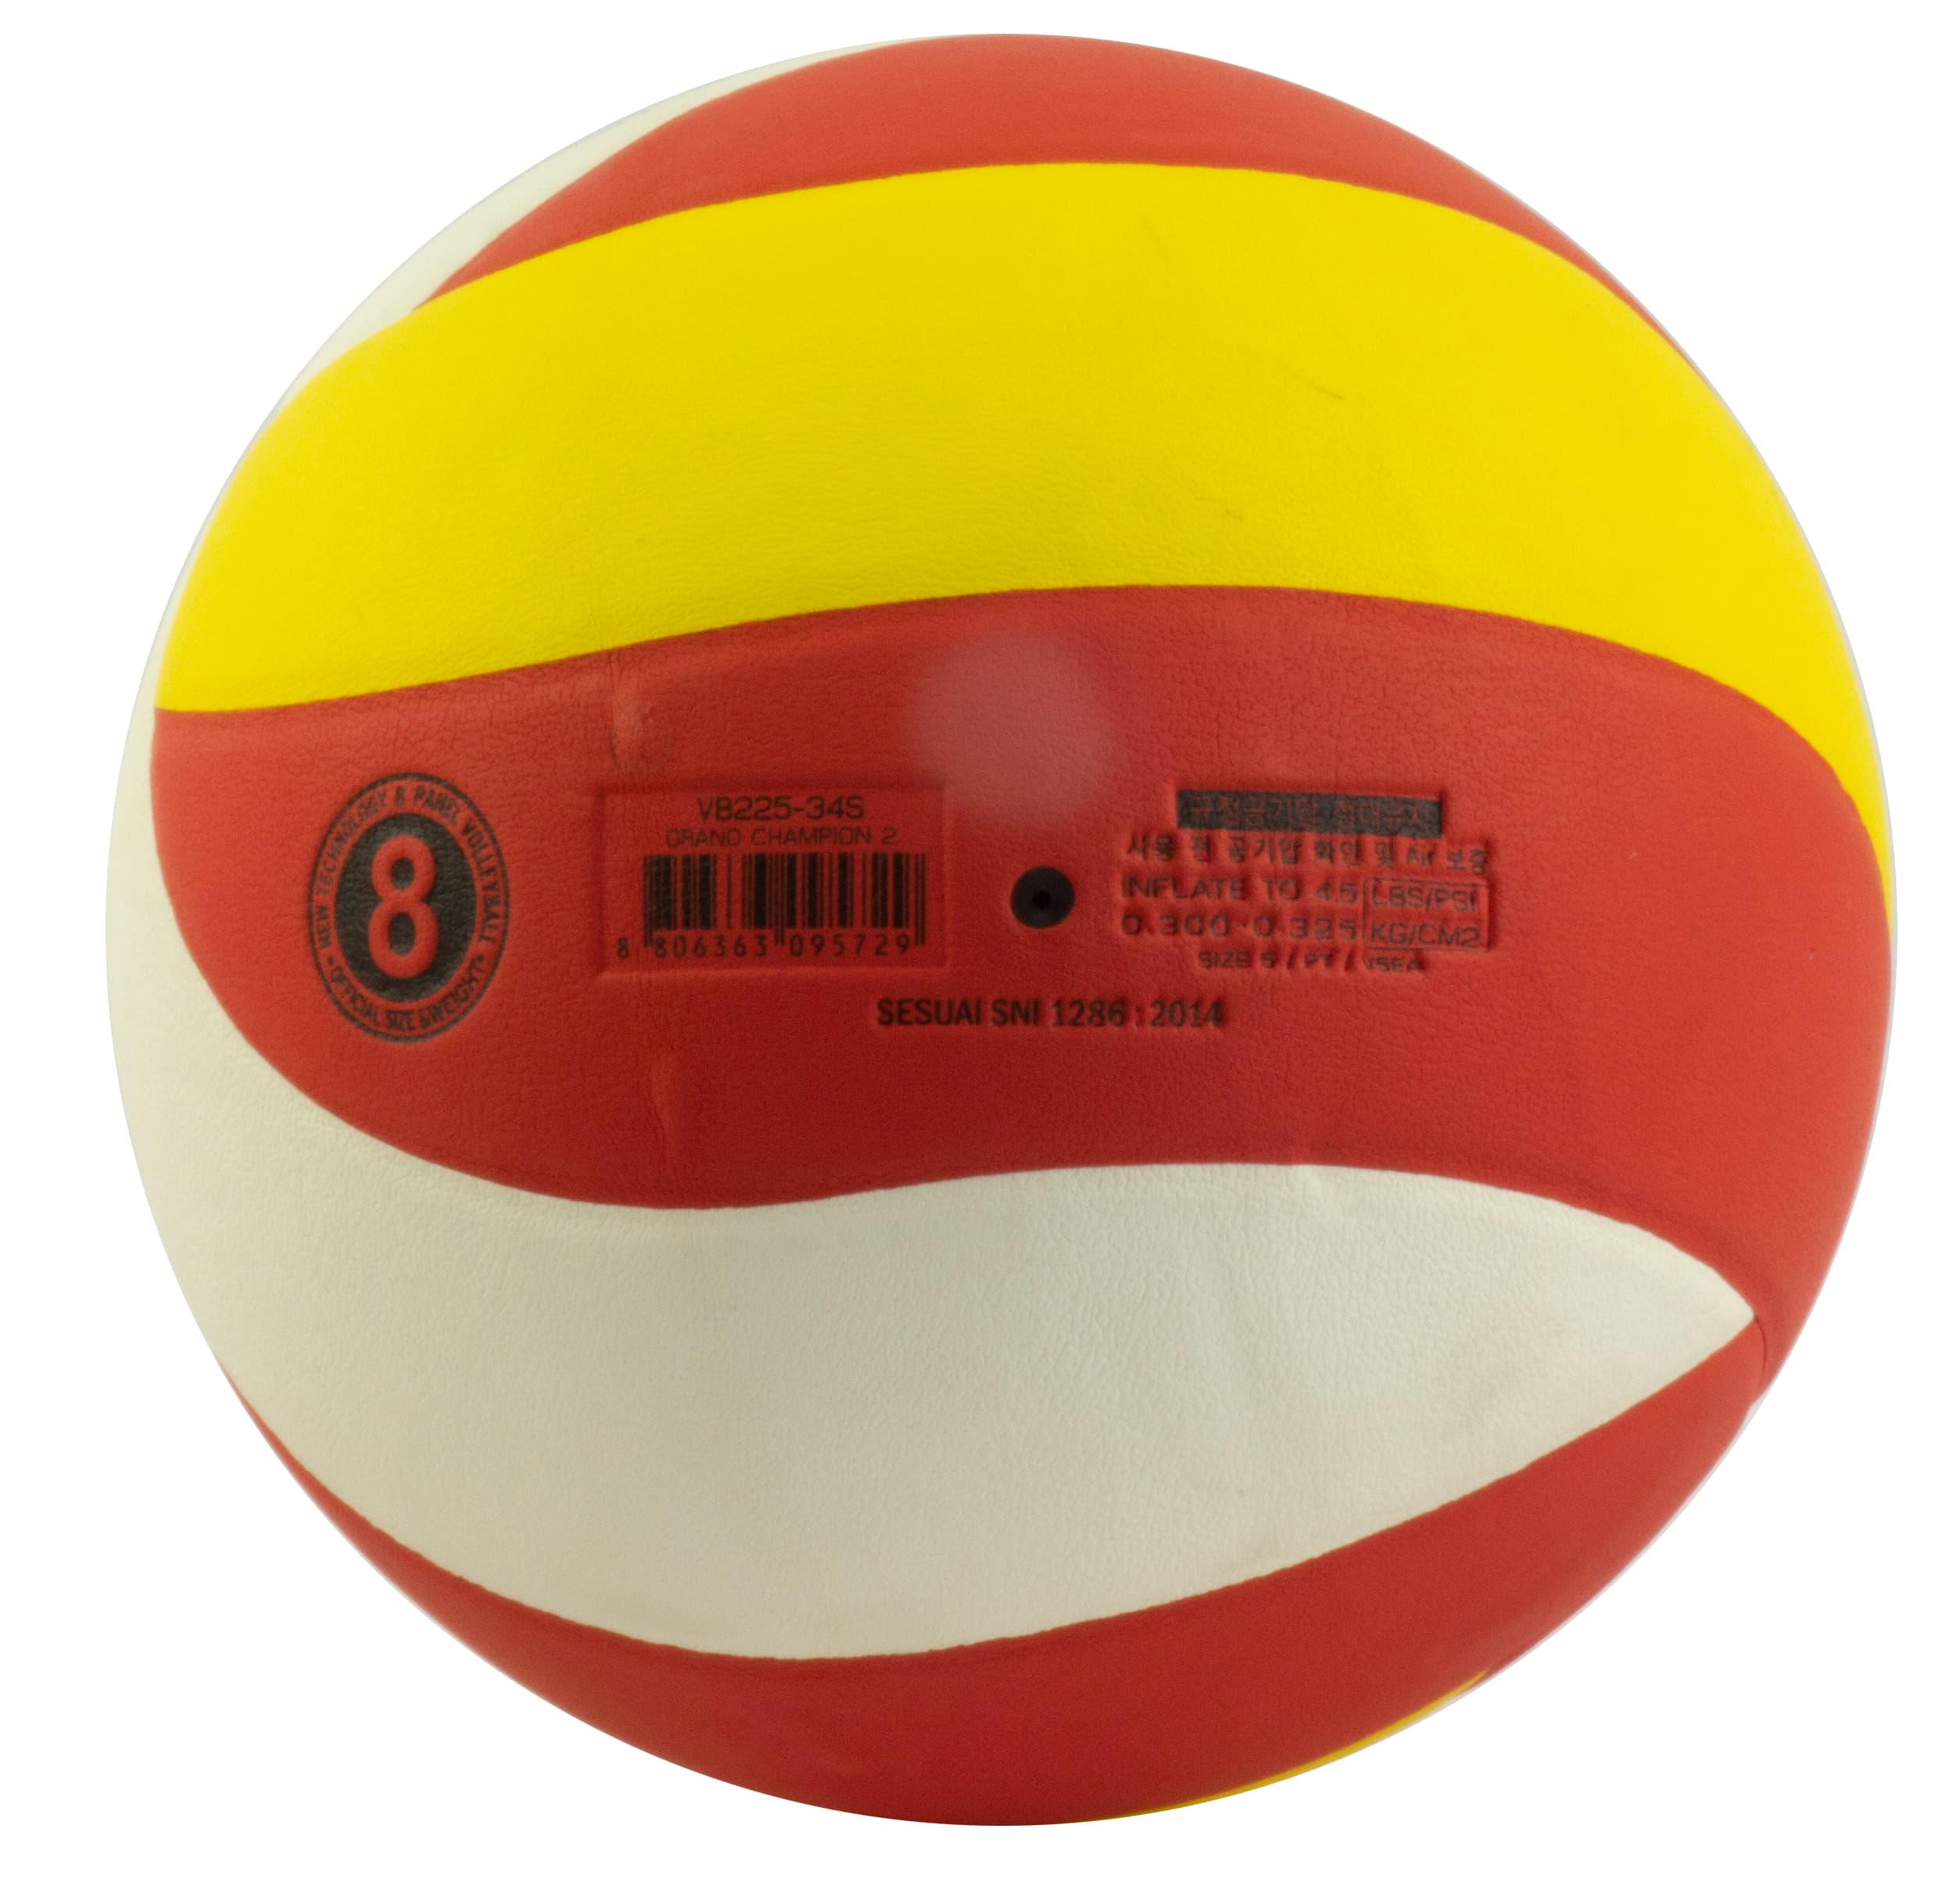 Мяч волейбольный «Grand Champion», F33976, 5 размер / Желто-красный